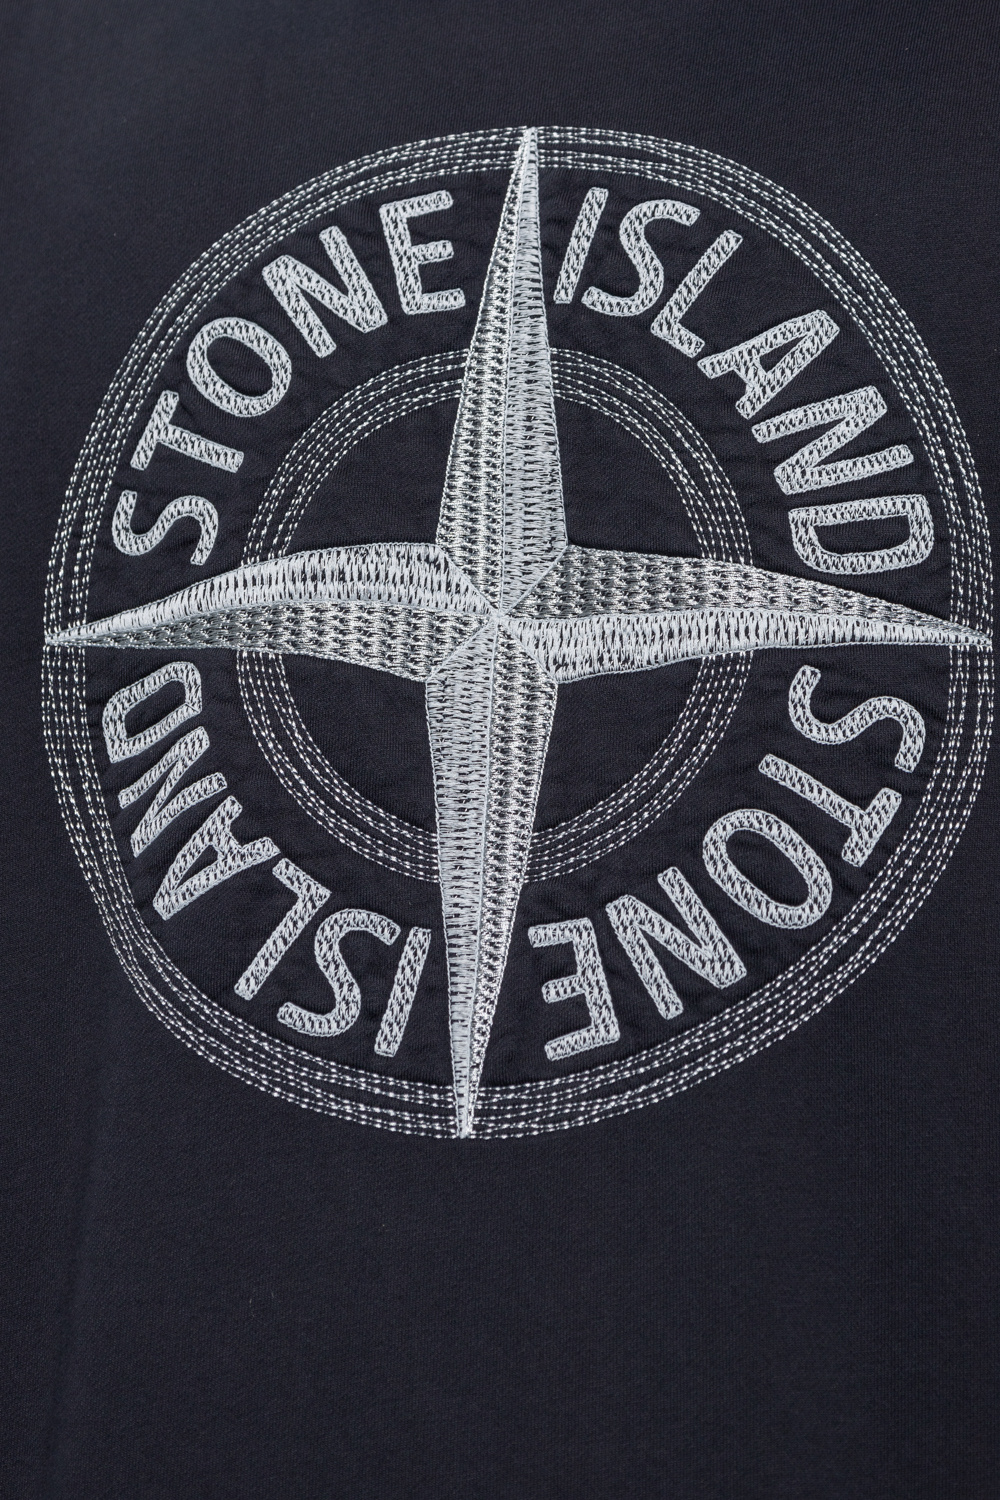 Stone Island kristensen du nord cashmere trim t shirt item